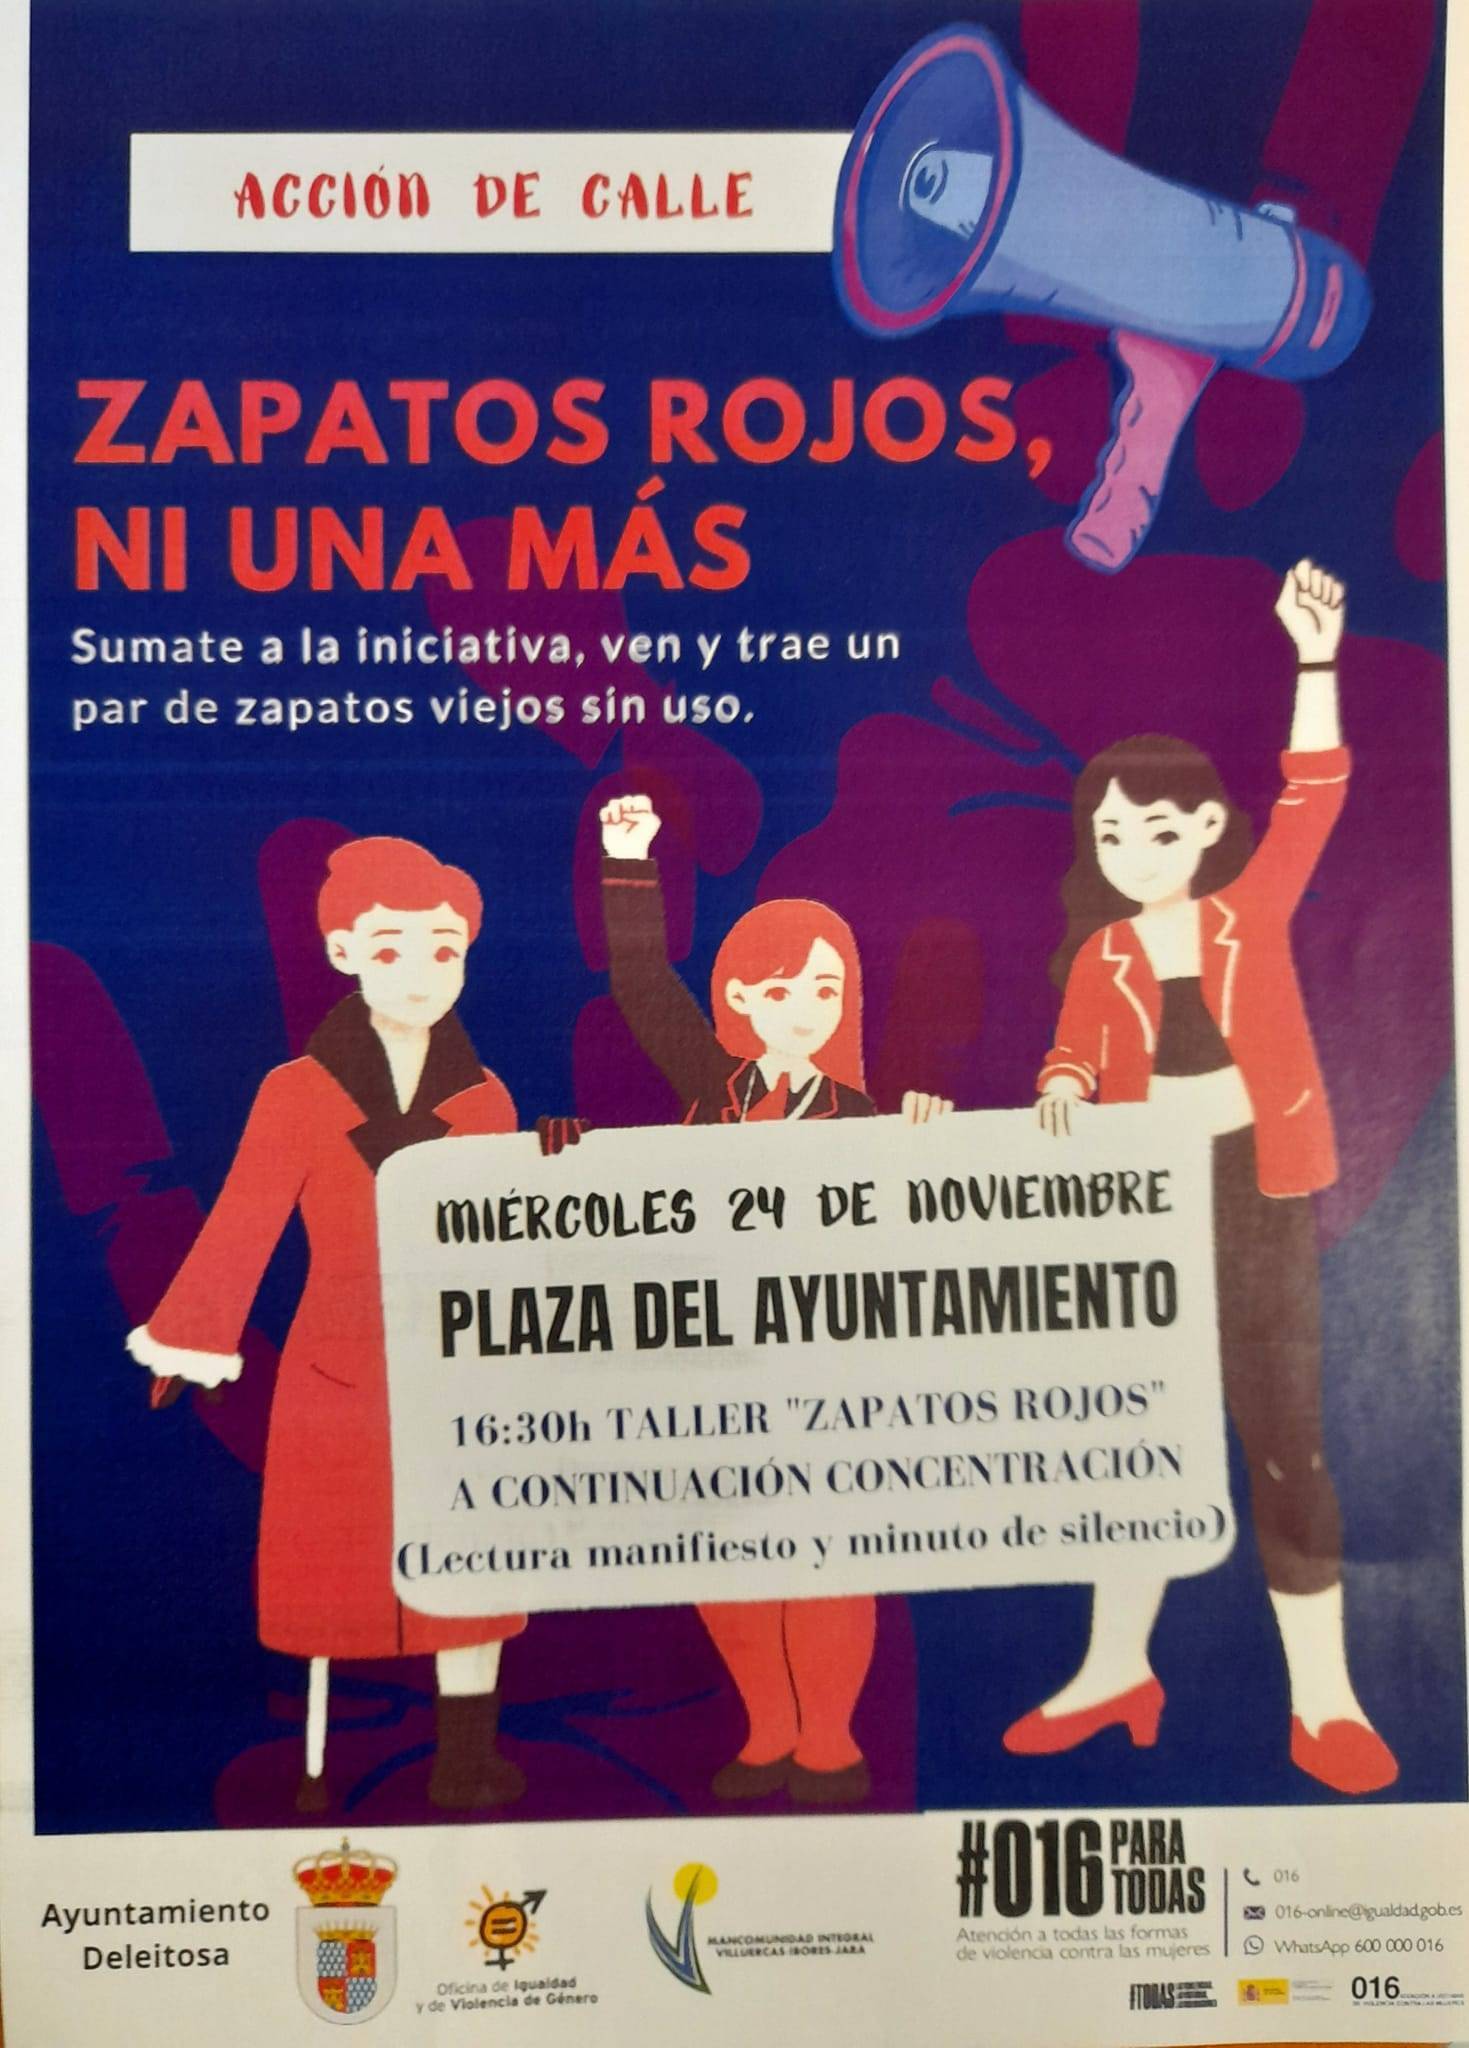 Zapatos Rojos, ni una más (2021) - Deleitosa (Cáceres)